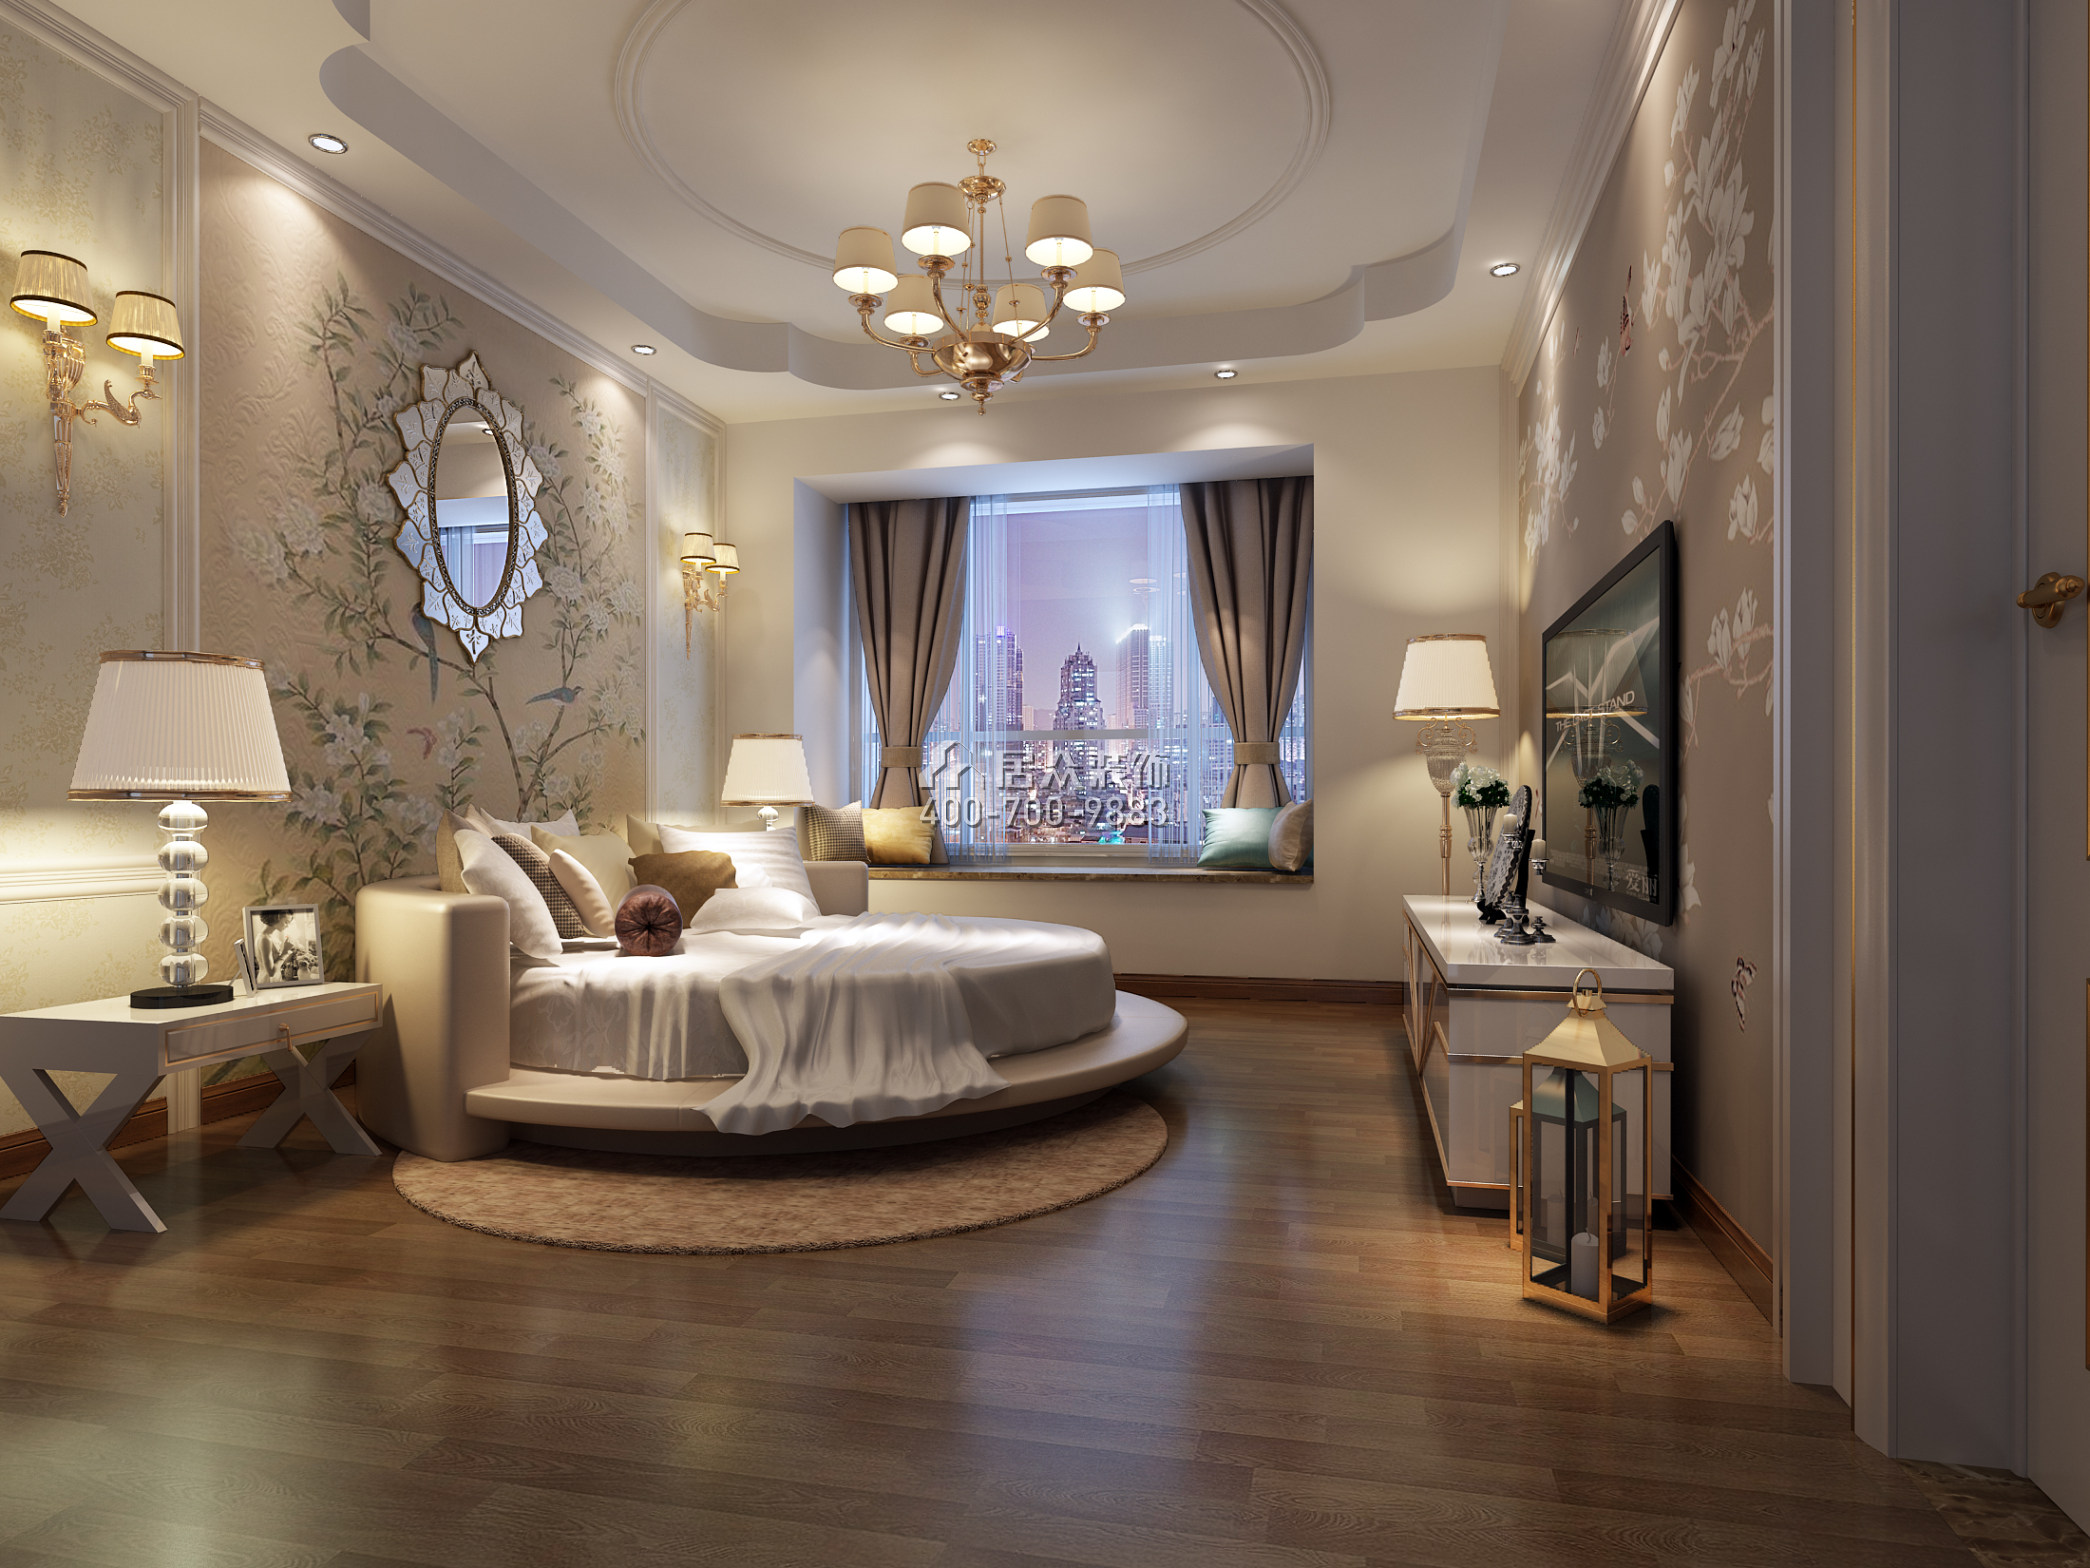 招商卡达凯斯140平方米欧式风格平层户型卧室装修效果图